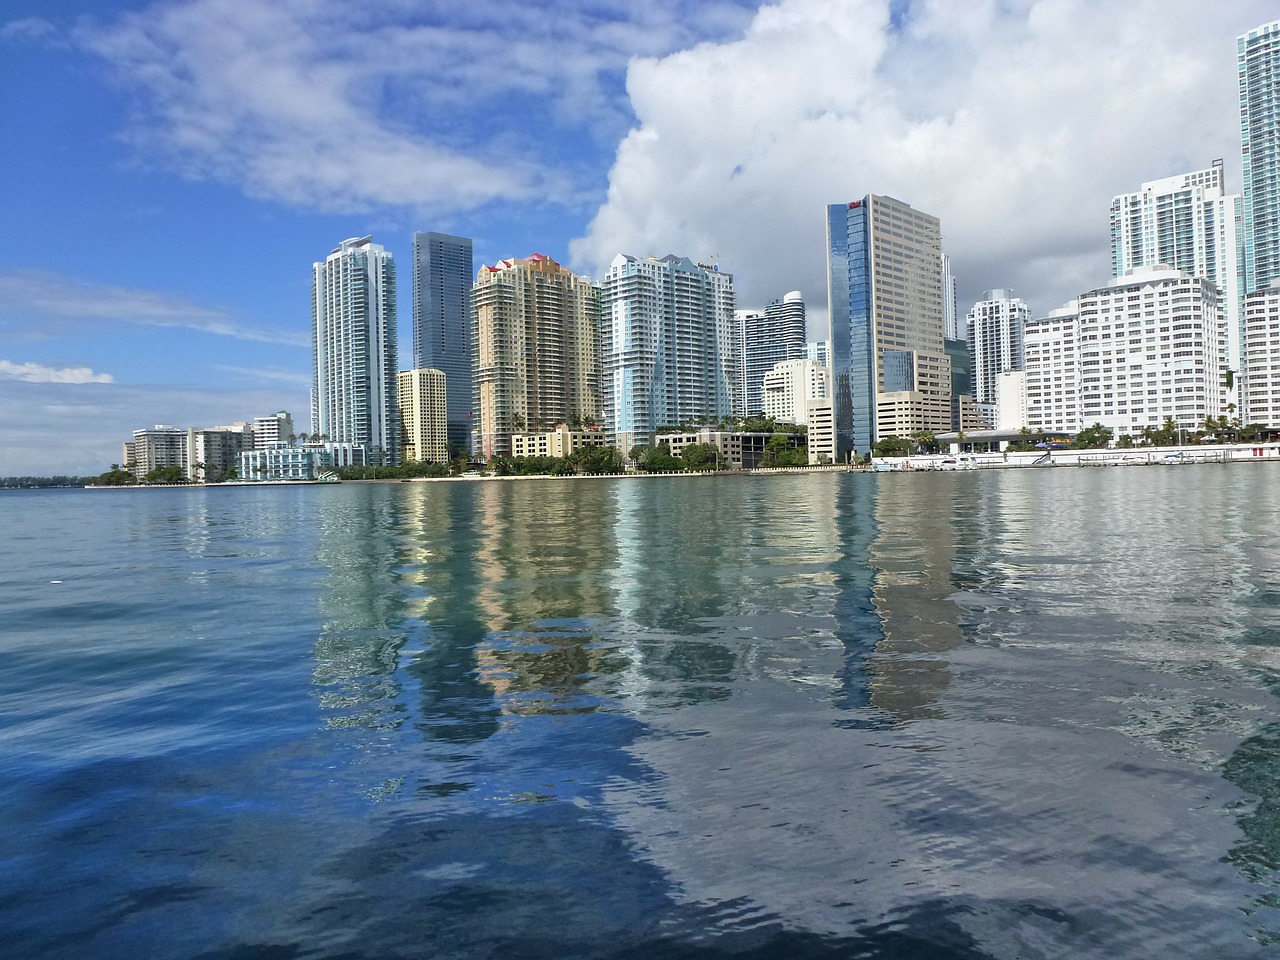 Miami busca convertirse en el centro financiero del sur de EEUU